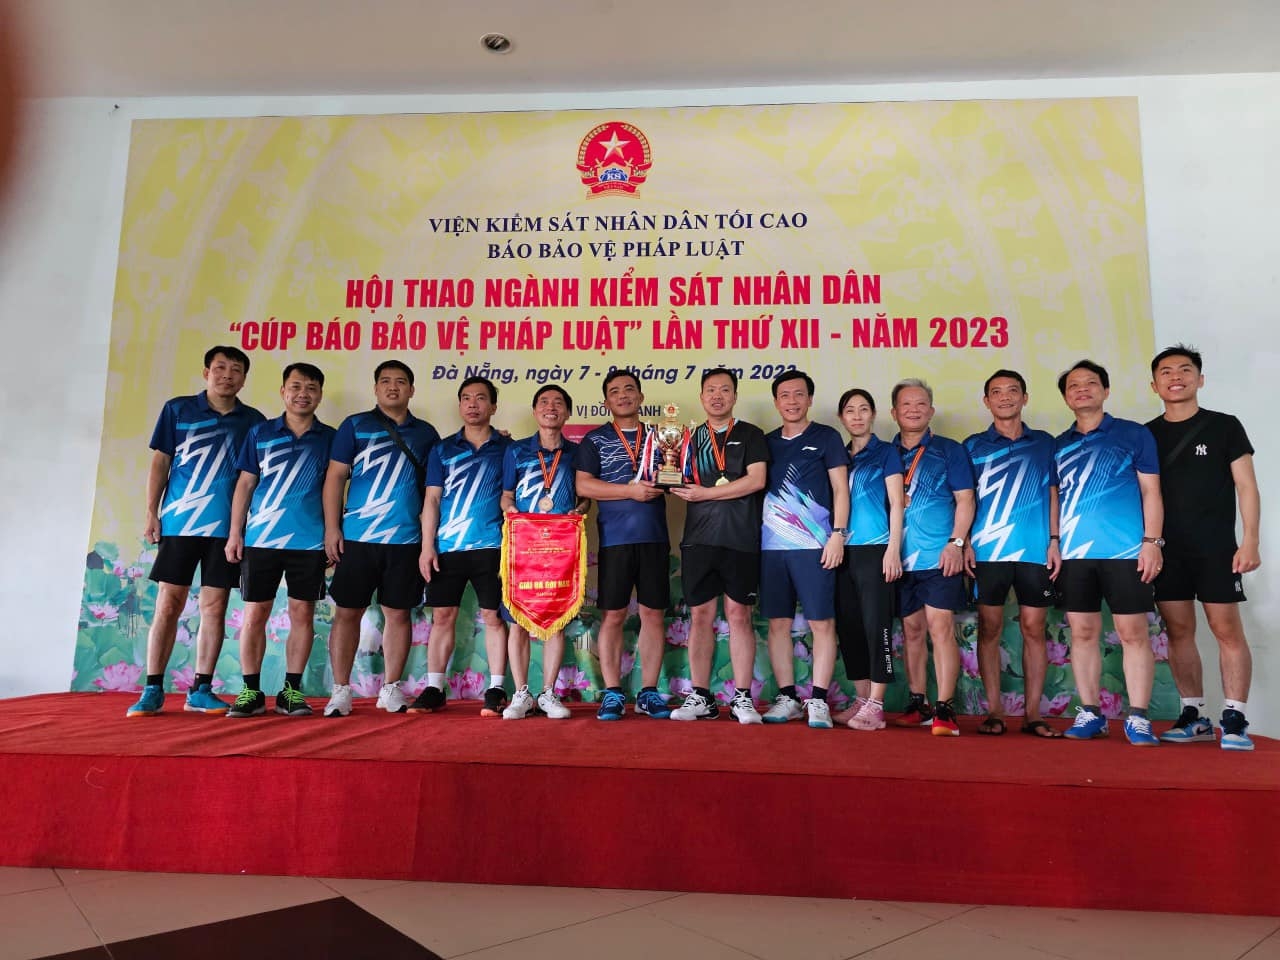 Đoàn thể thao Viện kiểm sát nhân dân tỉnh Ninh Bình tham dự Hội thao Ngành kiểm sát nhân dân năm 2023